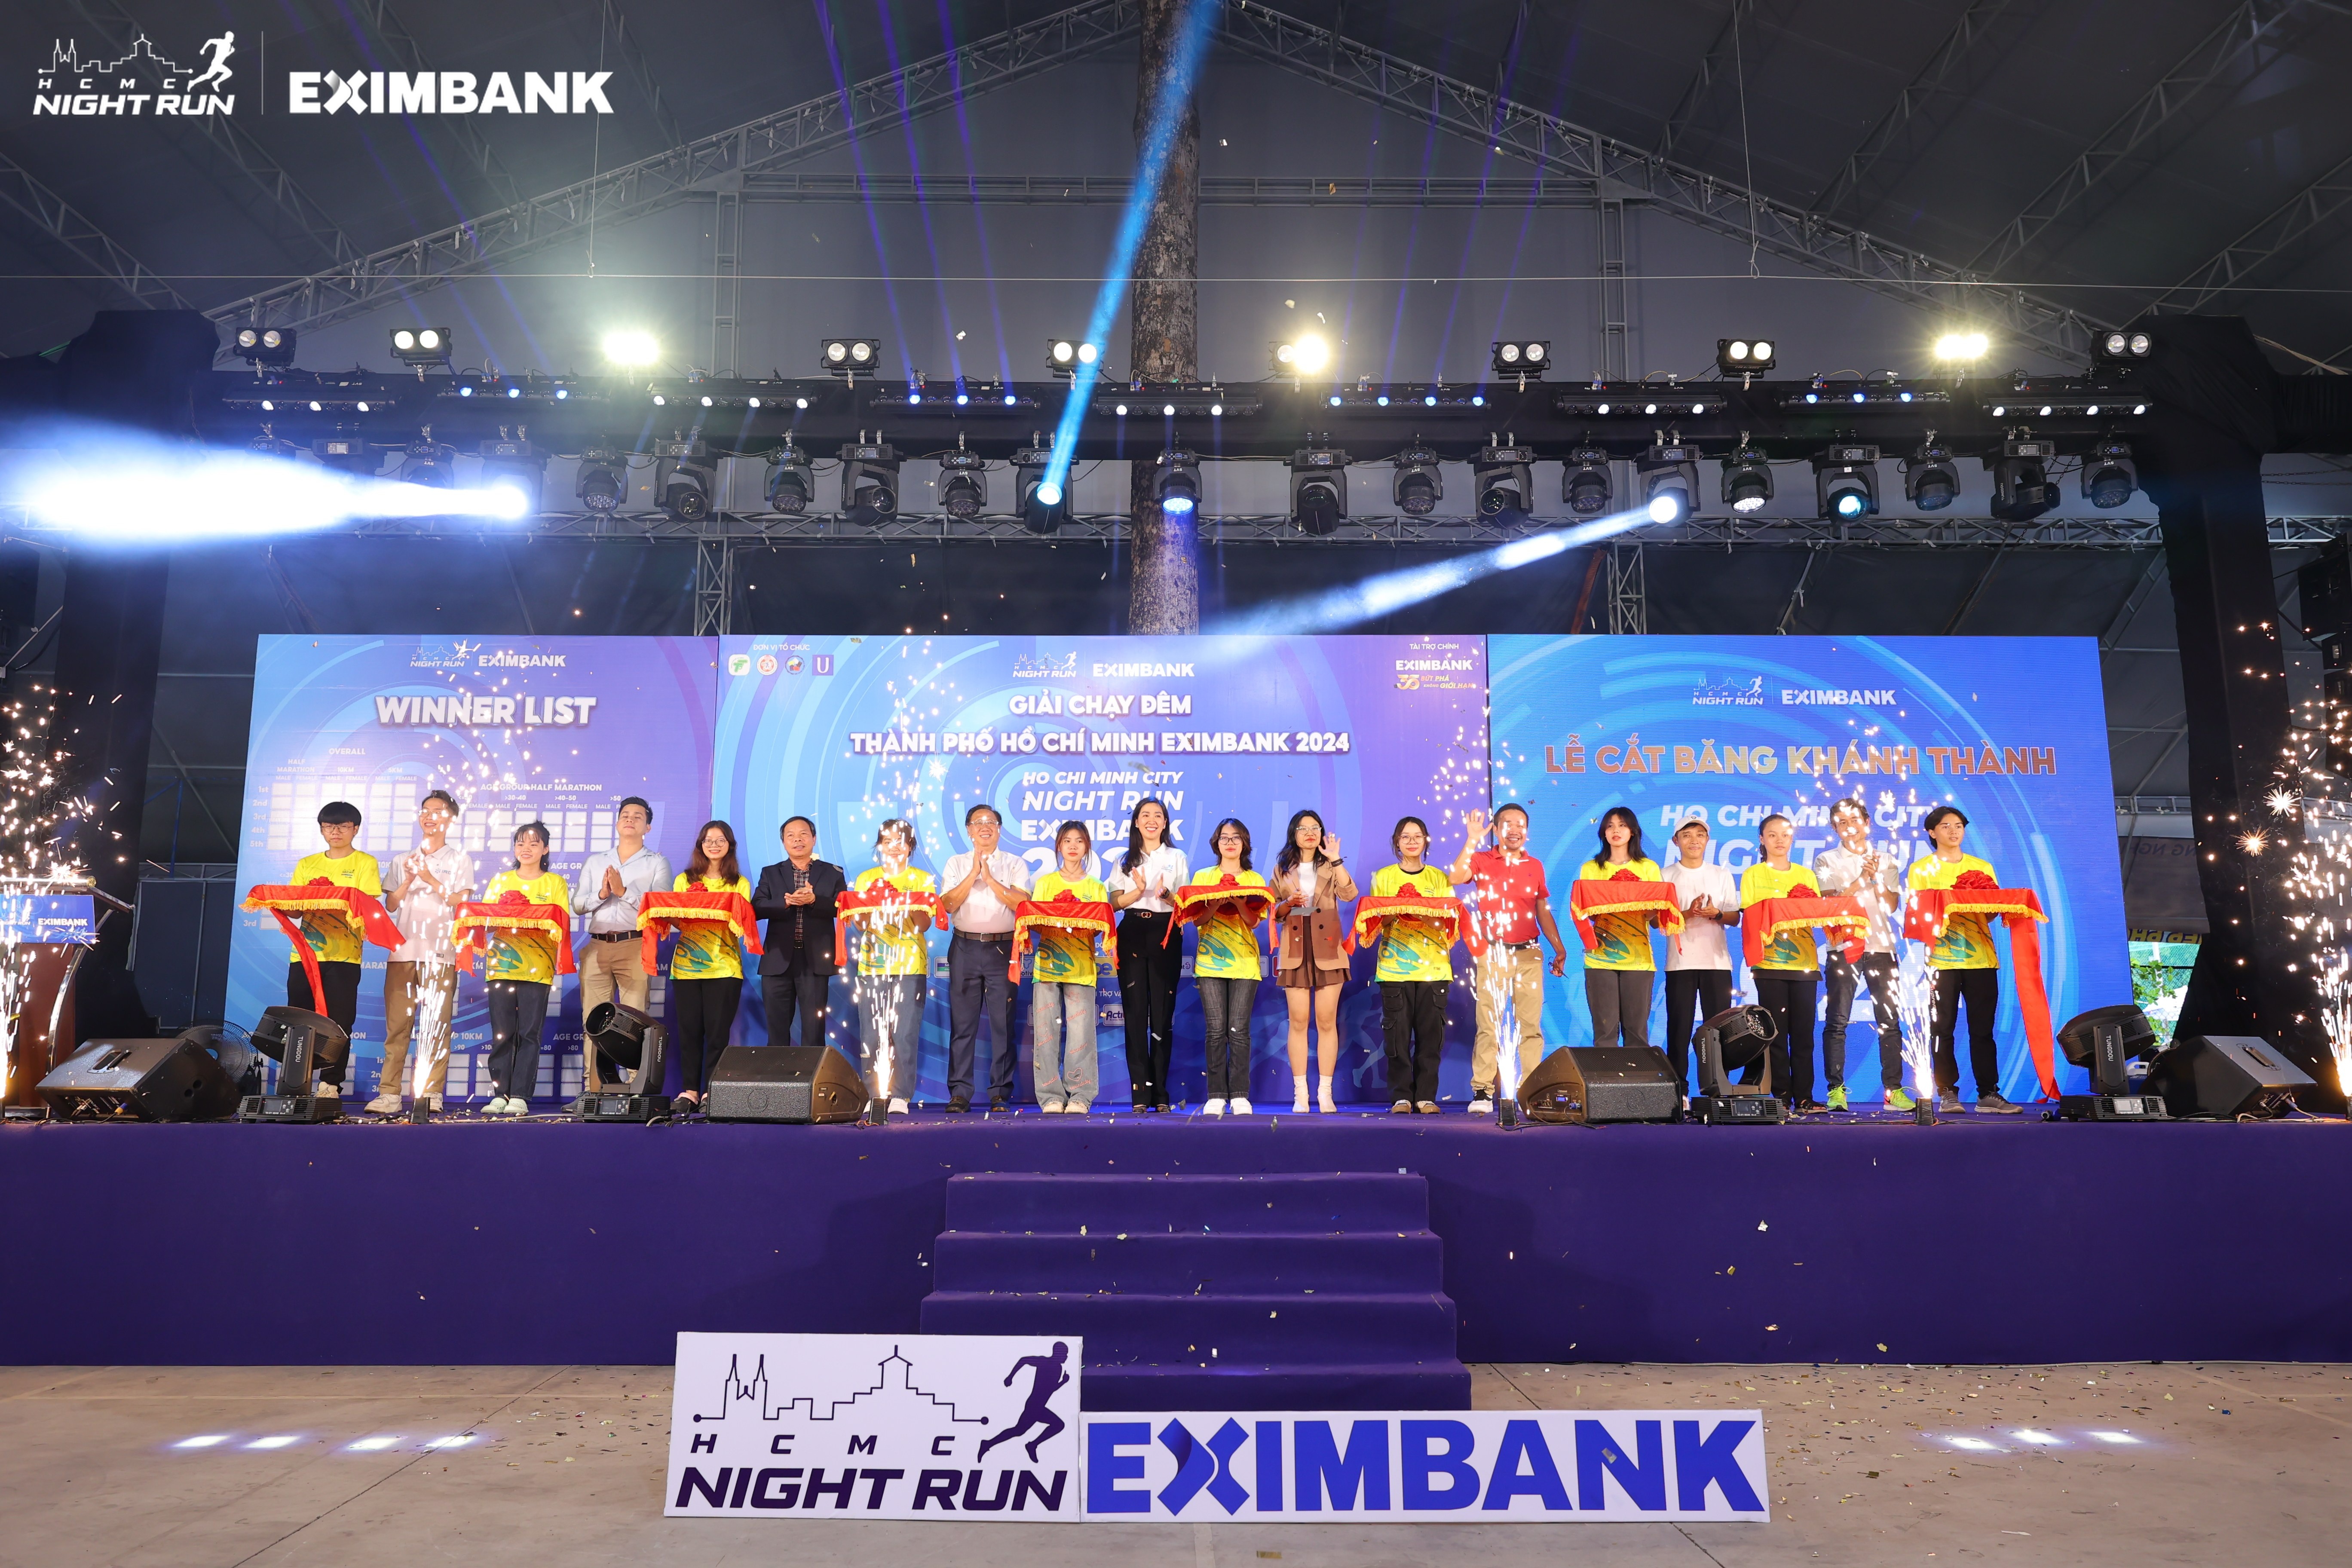 Bà Lê Thị Mai Loan, Phó Tổng Giám đốc Eximbank (chính giữa) cùng đại diện ban tổ chức cắt băng khánh thành chính thức khai mạc sự kiện Ho Chi Minh City Night Run Eximbank mùa 3, năm 2024 